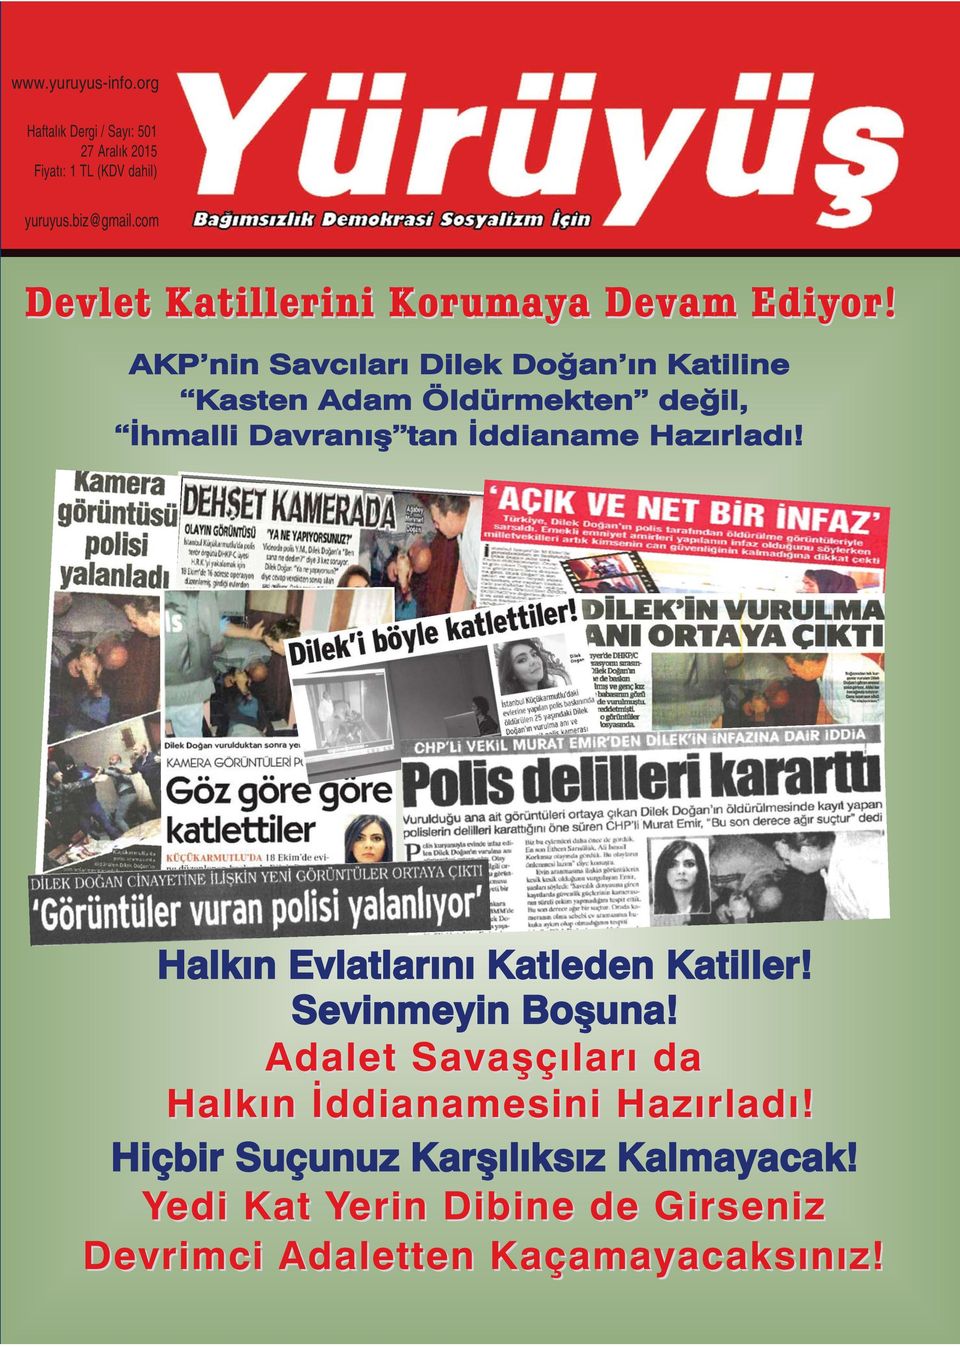 AKP nin Savcıları Dilek Doğan ın Katiline Kasten Adam Öldürmekten değil, İhmalli Davranış tan İddianame Hazırladı!